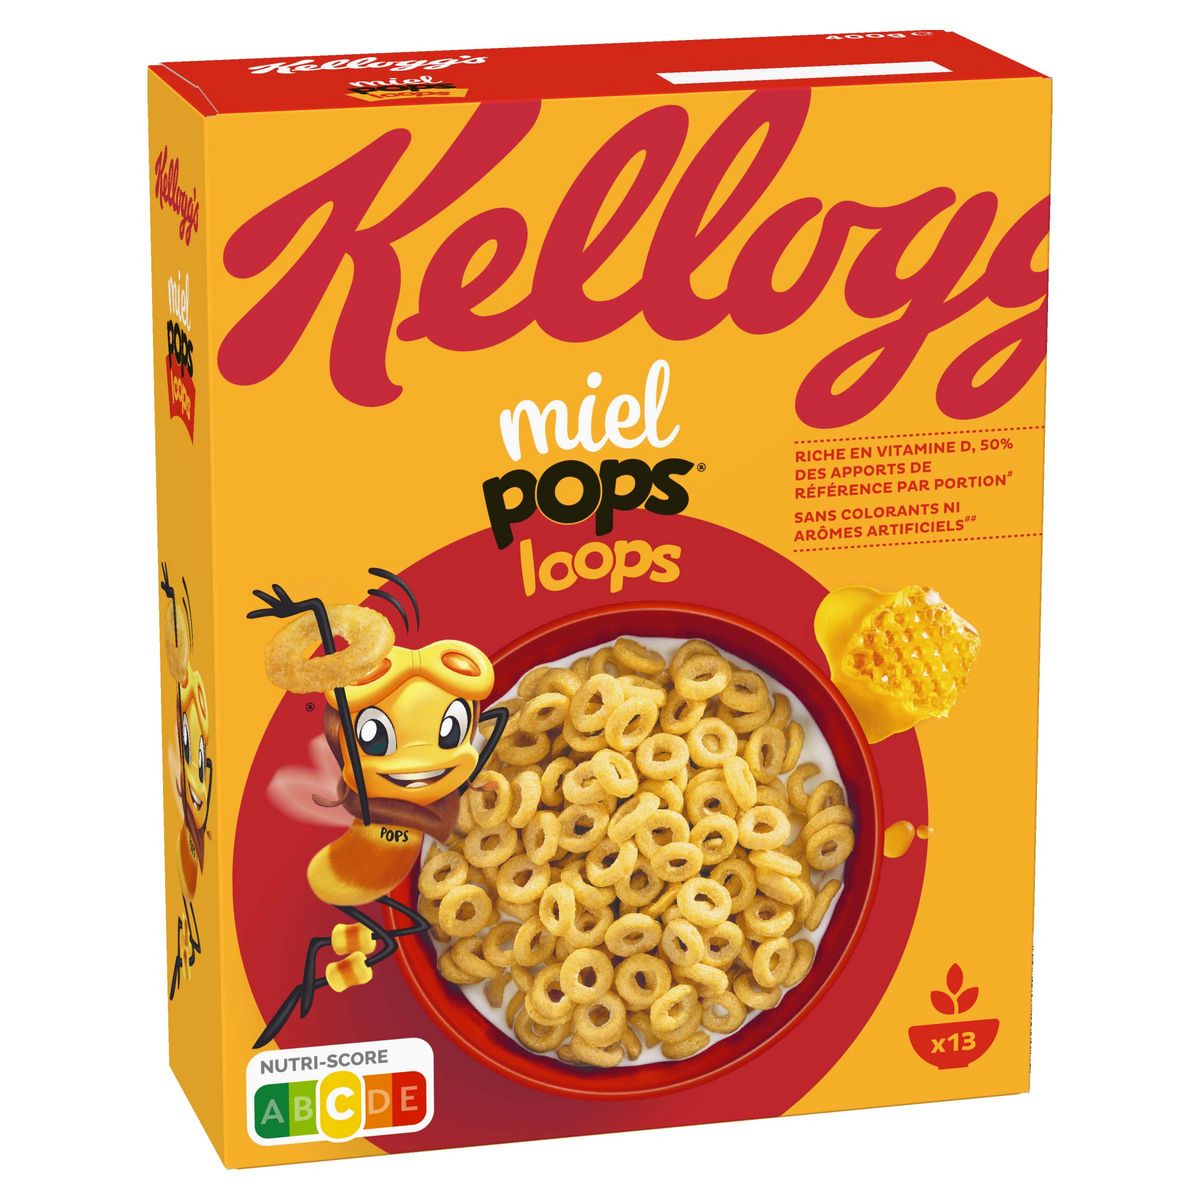 KELLOGG'S Miel Pops Loops Céréales au miel 400g